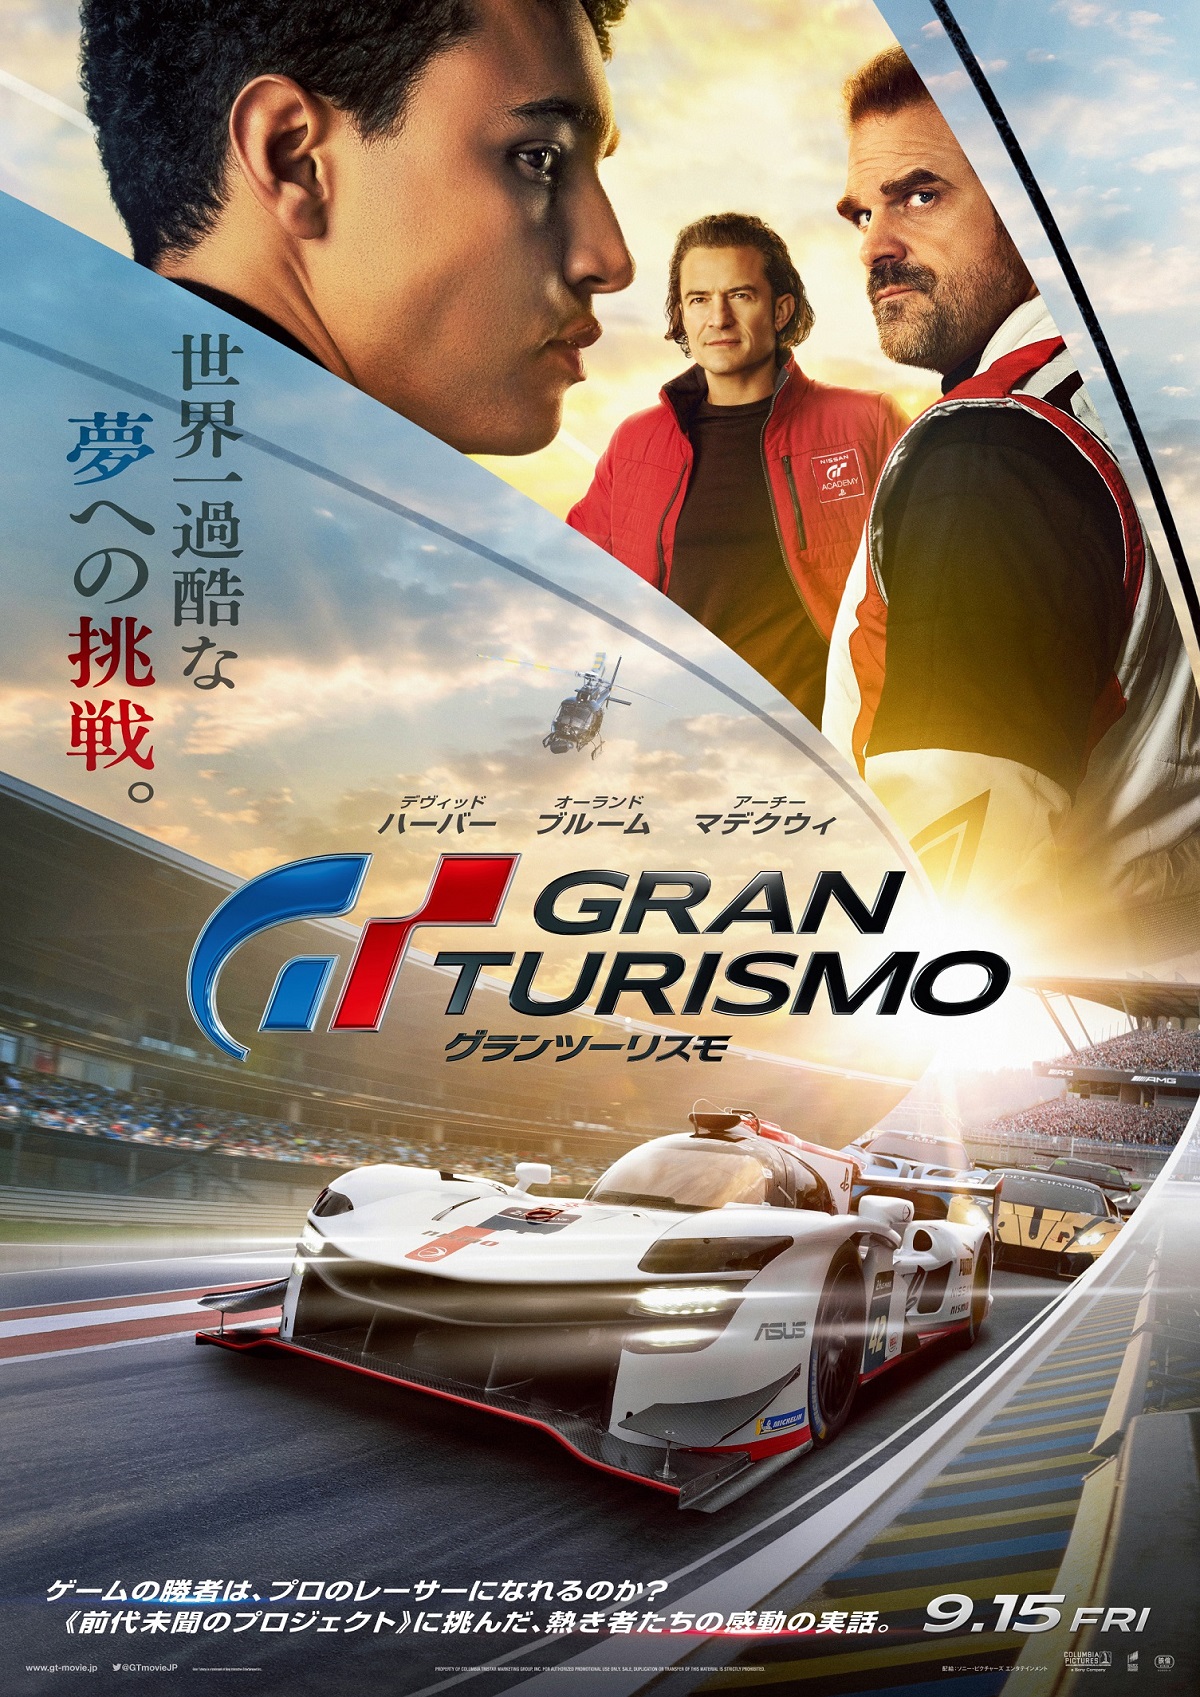 映画「グランツーリスモ」，公開日を9月15日に決定。日本版本ポスターを公開